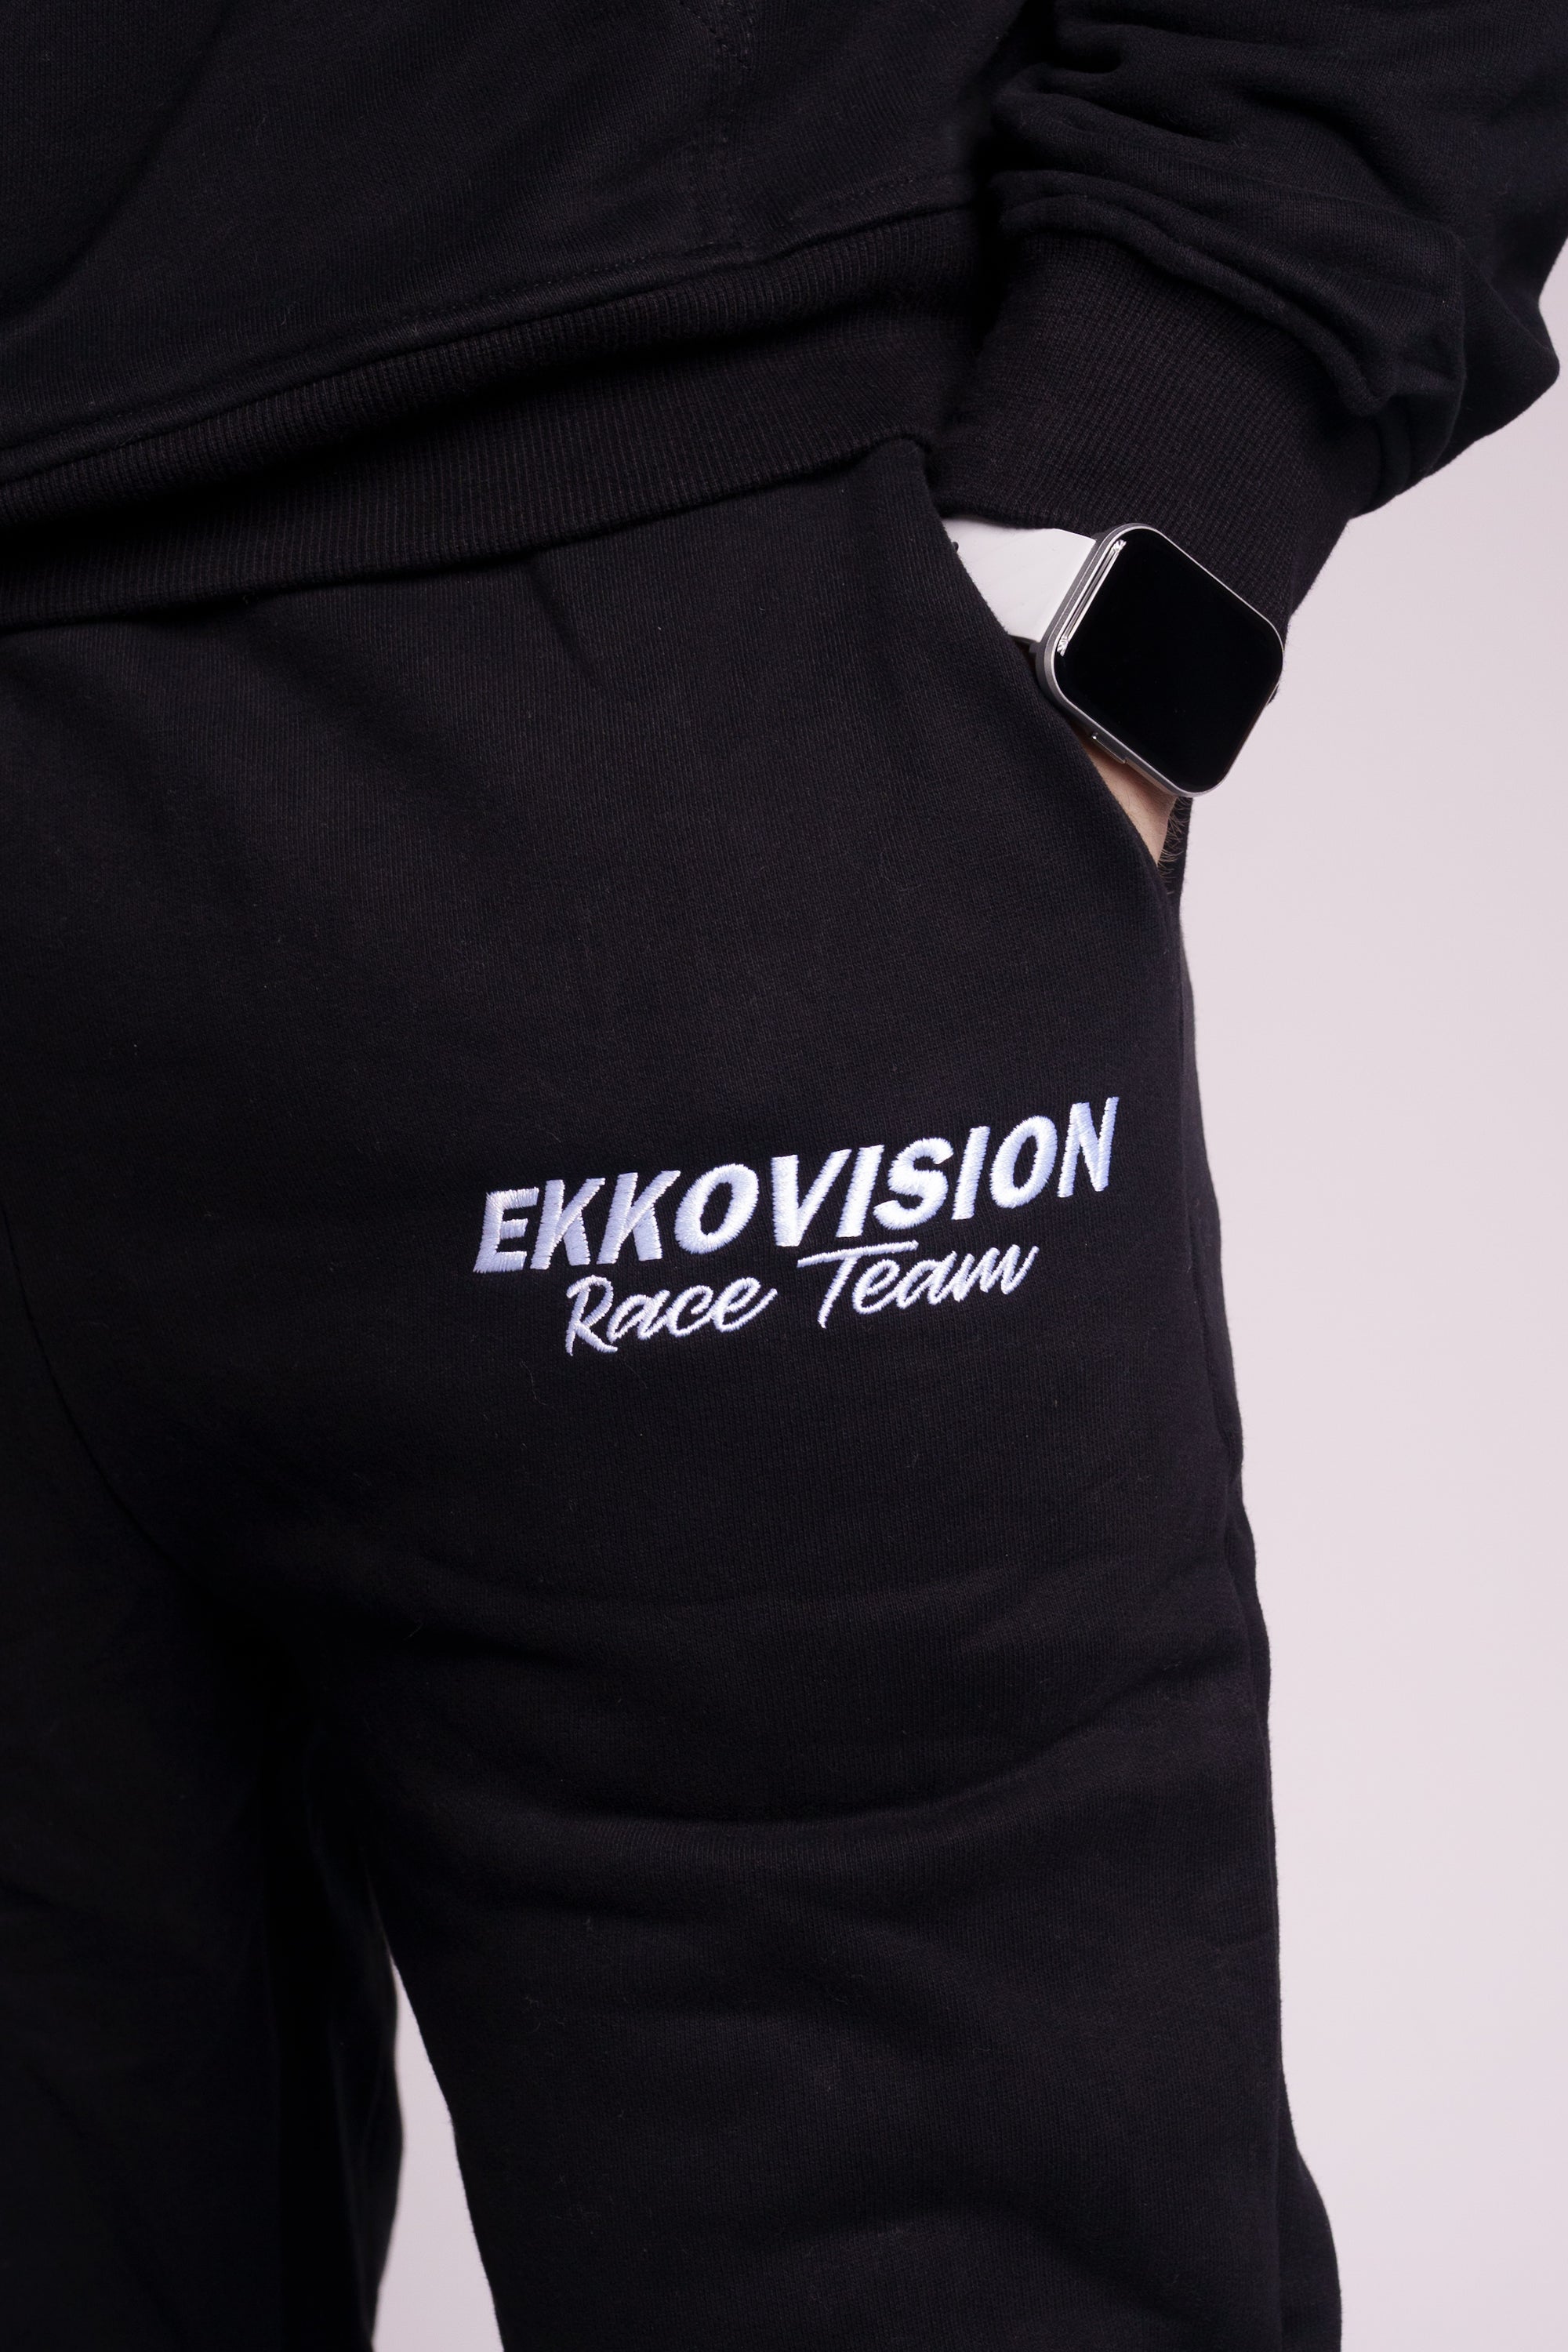 Ekkovision SweatPant (Size Up)